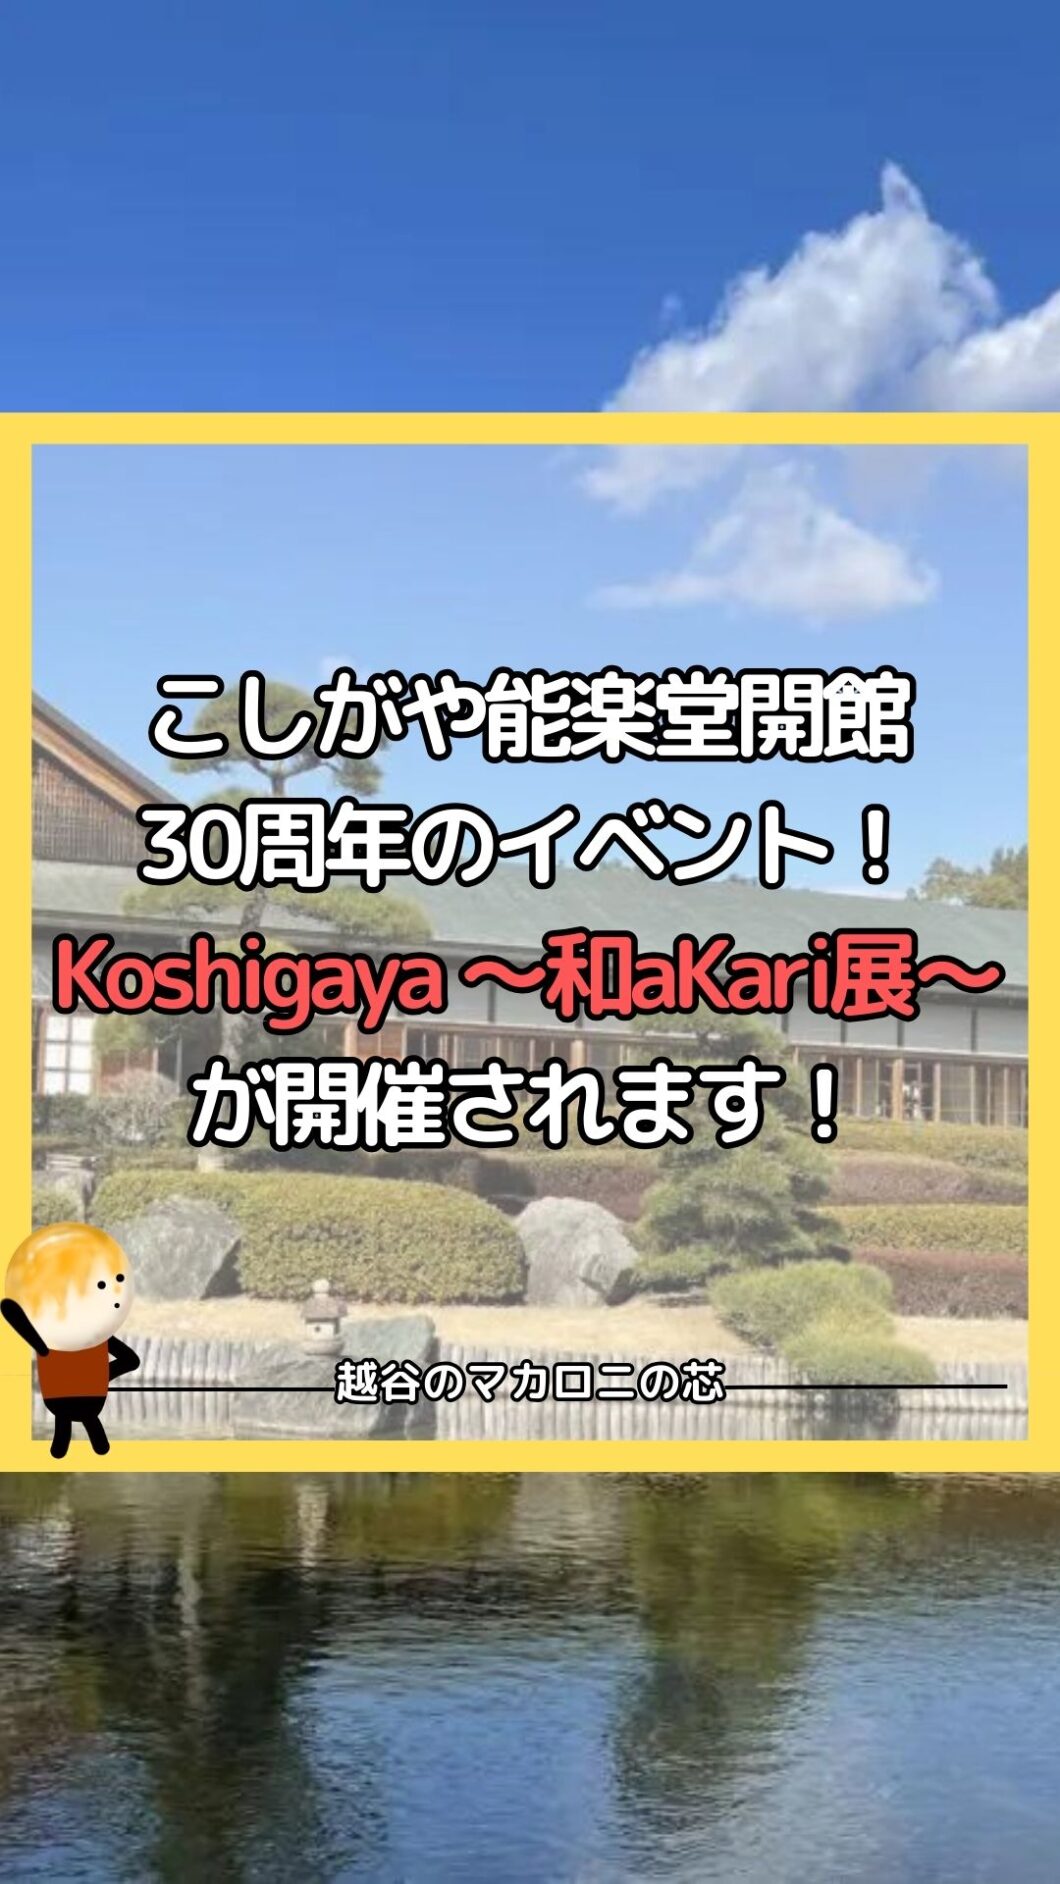 こしがや能楽堂開館30周年のイベント！Koshigaya ～和aKari展～が開催されます！